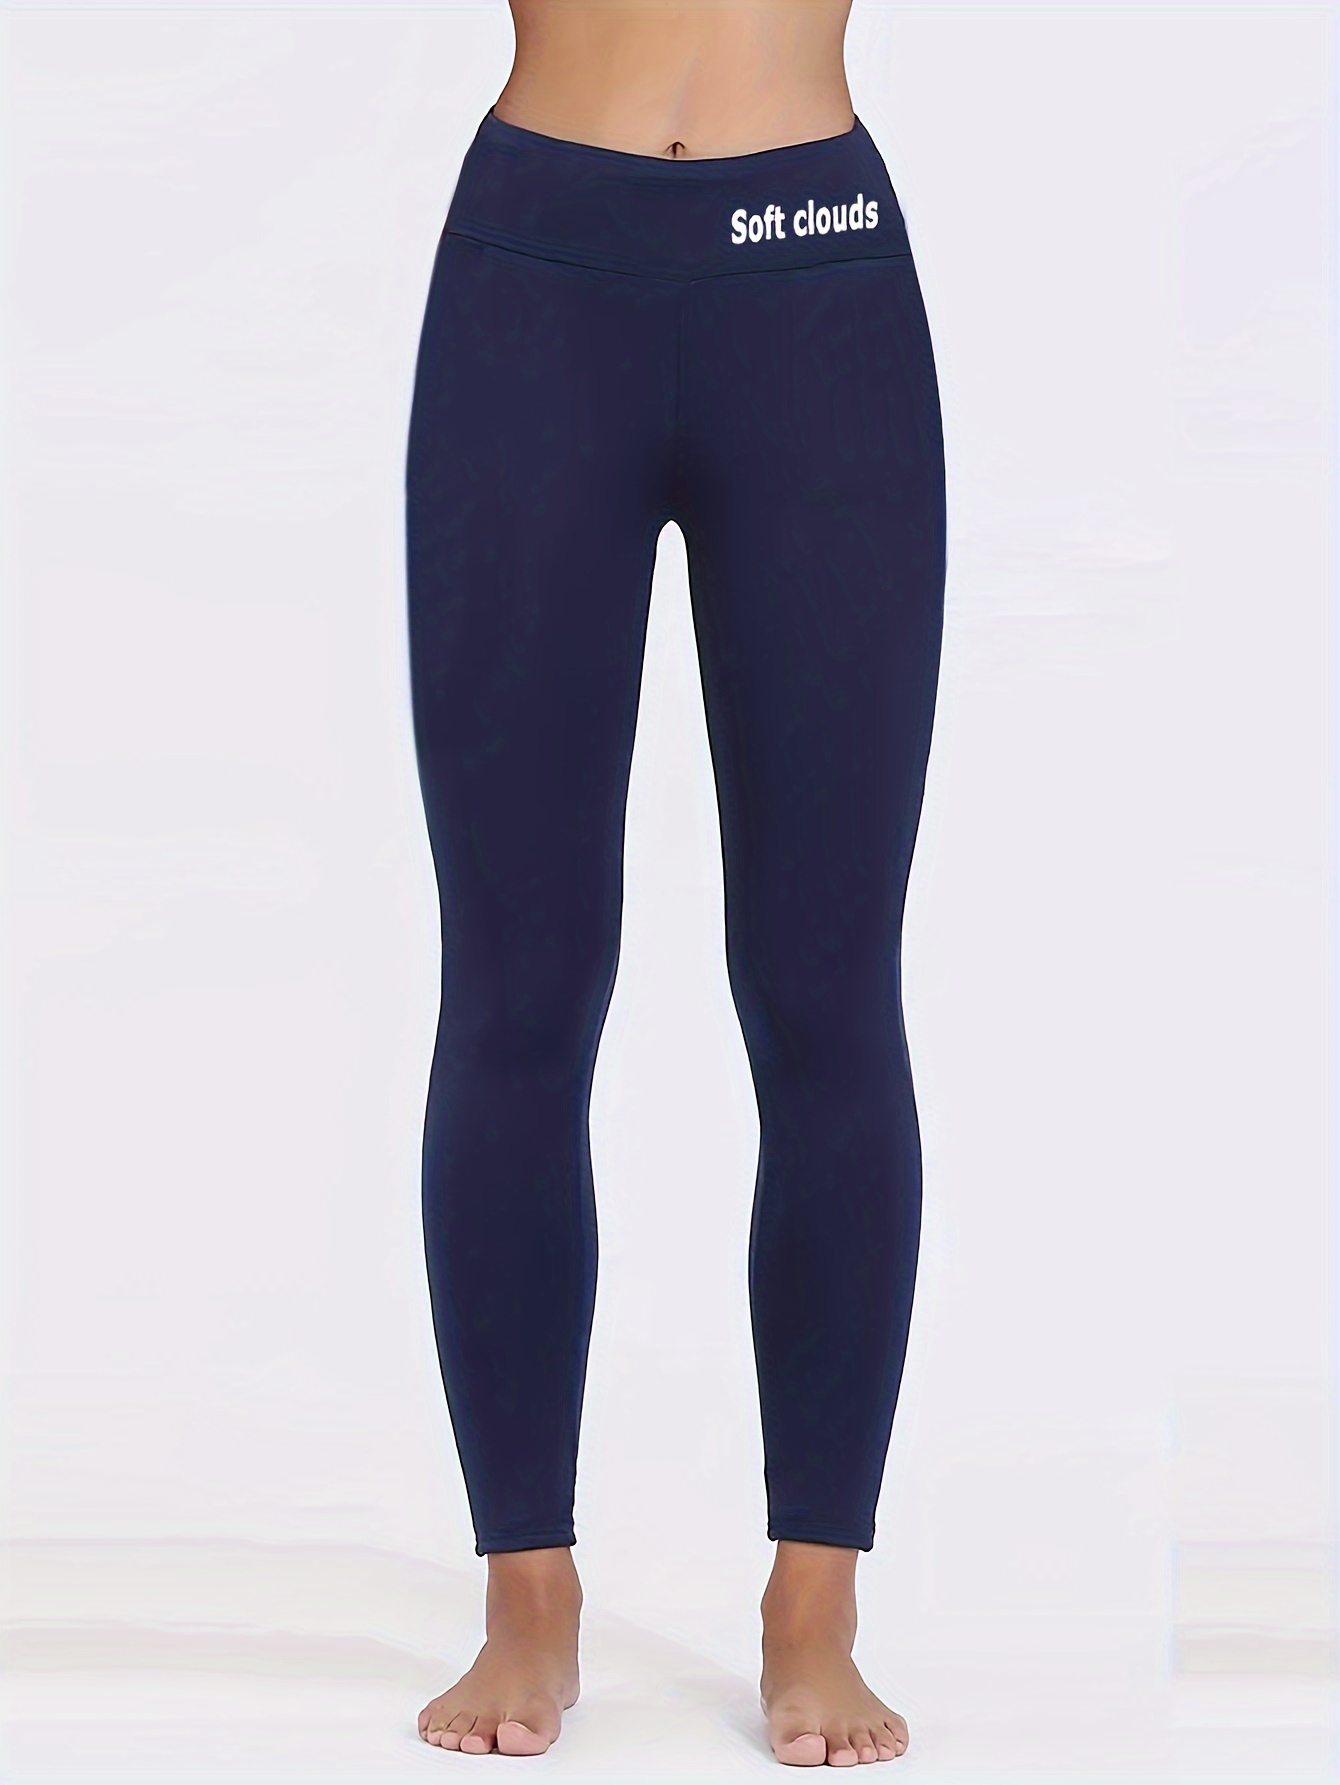 Plush Thermal Pants Soft Comfy Slim Elastic Tights Winter - Temu